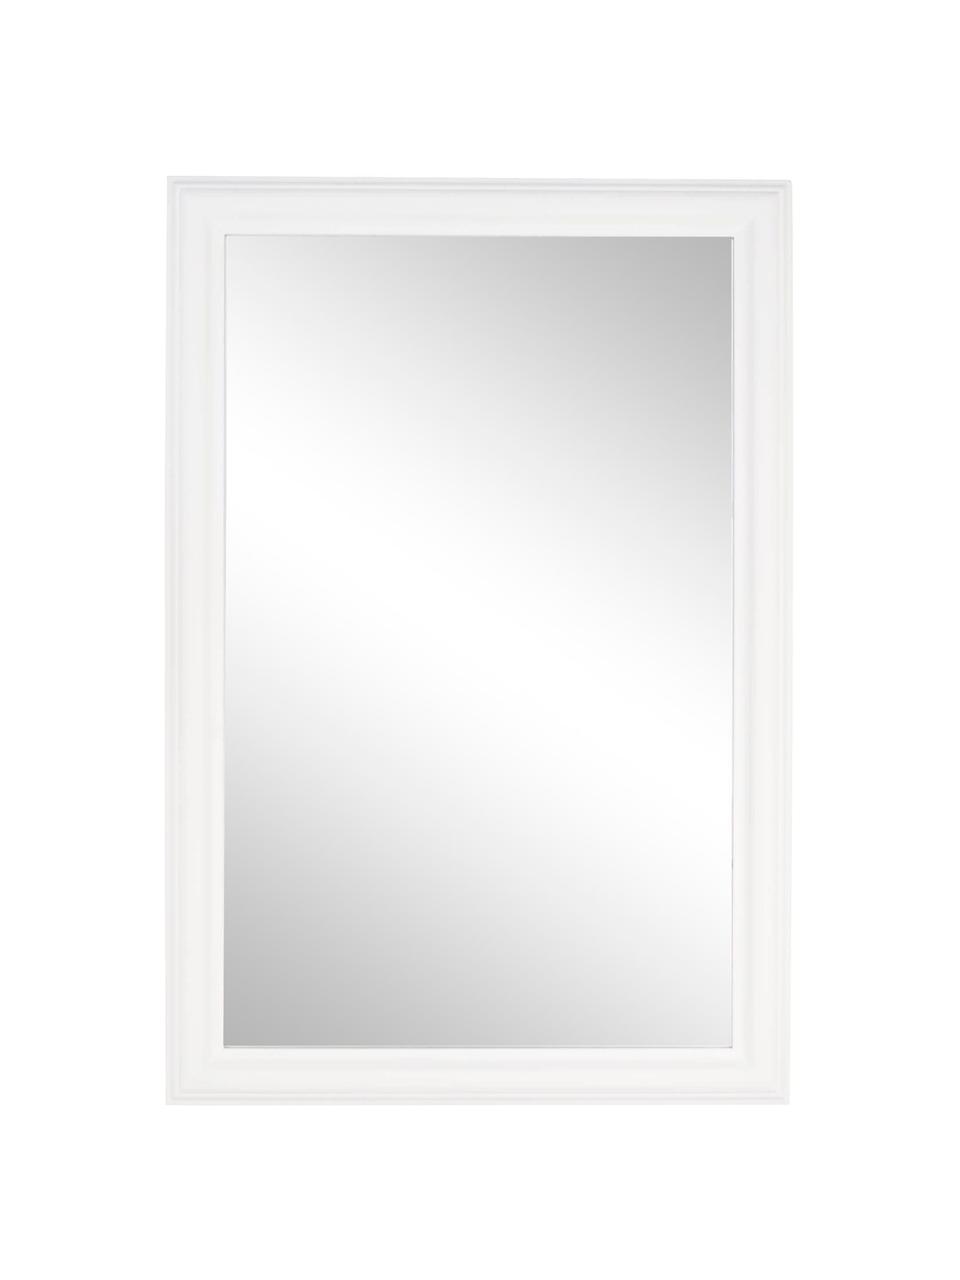 Specchio da parete quadrato con cornice in legno Sanzio, Cornice: legno di paulownia rivest, Superficie dello specchio: lastra di vetro, Bianco, Larg. 60 x Alt. 90 cm